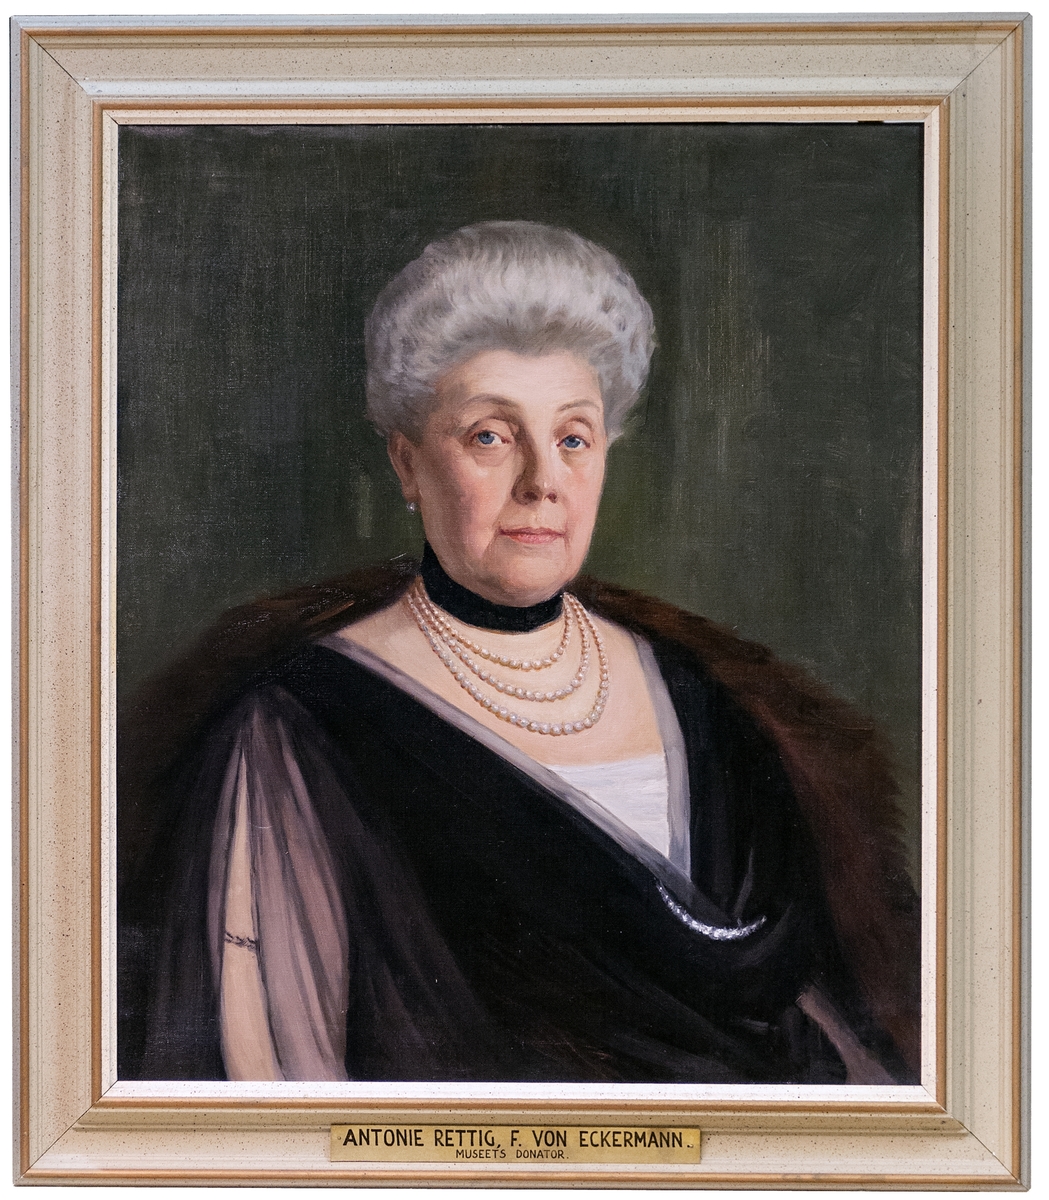 Porträttkopia föreställande konsulinnan Antonie Rettig, utförd av porträttmålaren Jean Haagen.